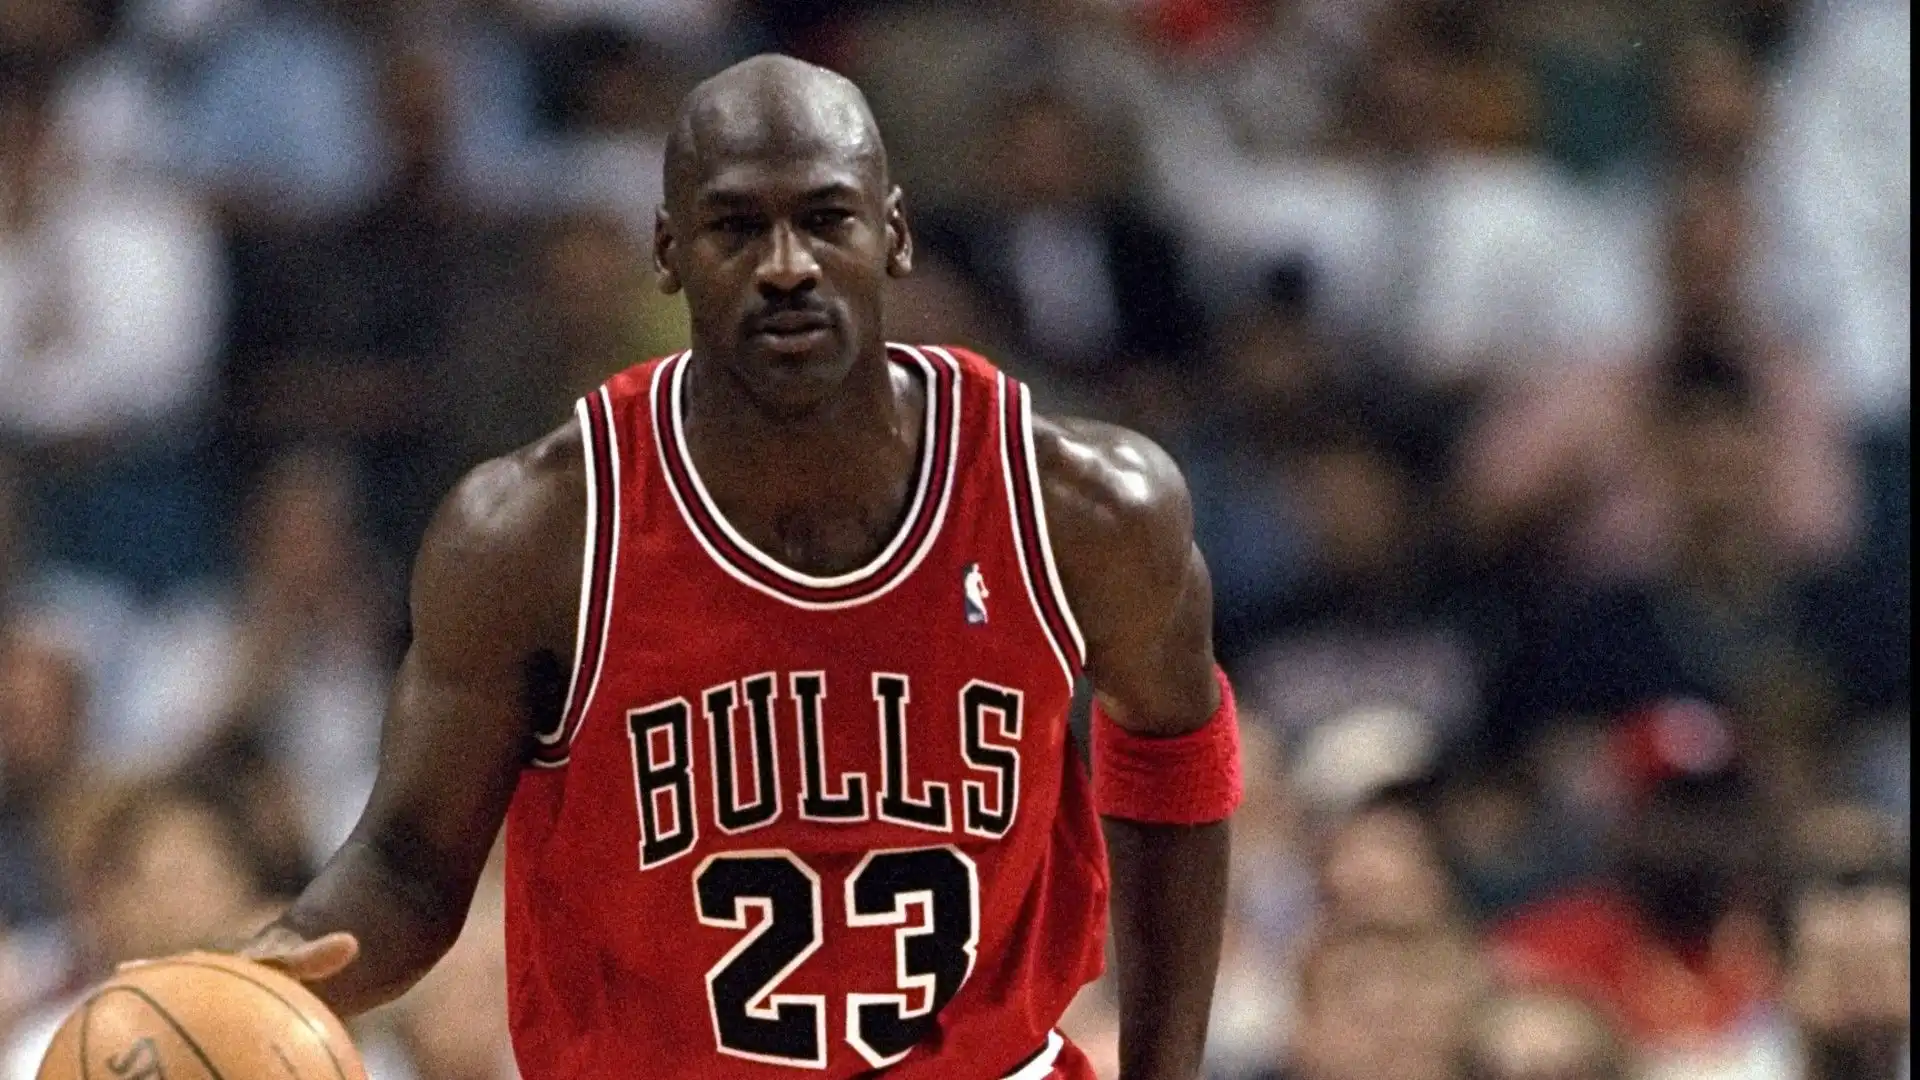 Michael Jordan - Considerato il più grande giocatore di basket di tutti i tempi, Jordan ha dominato il gioco negli anni '90